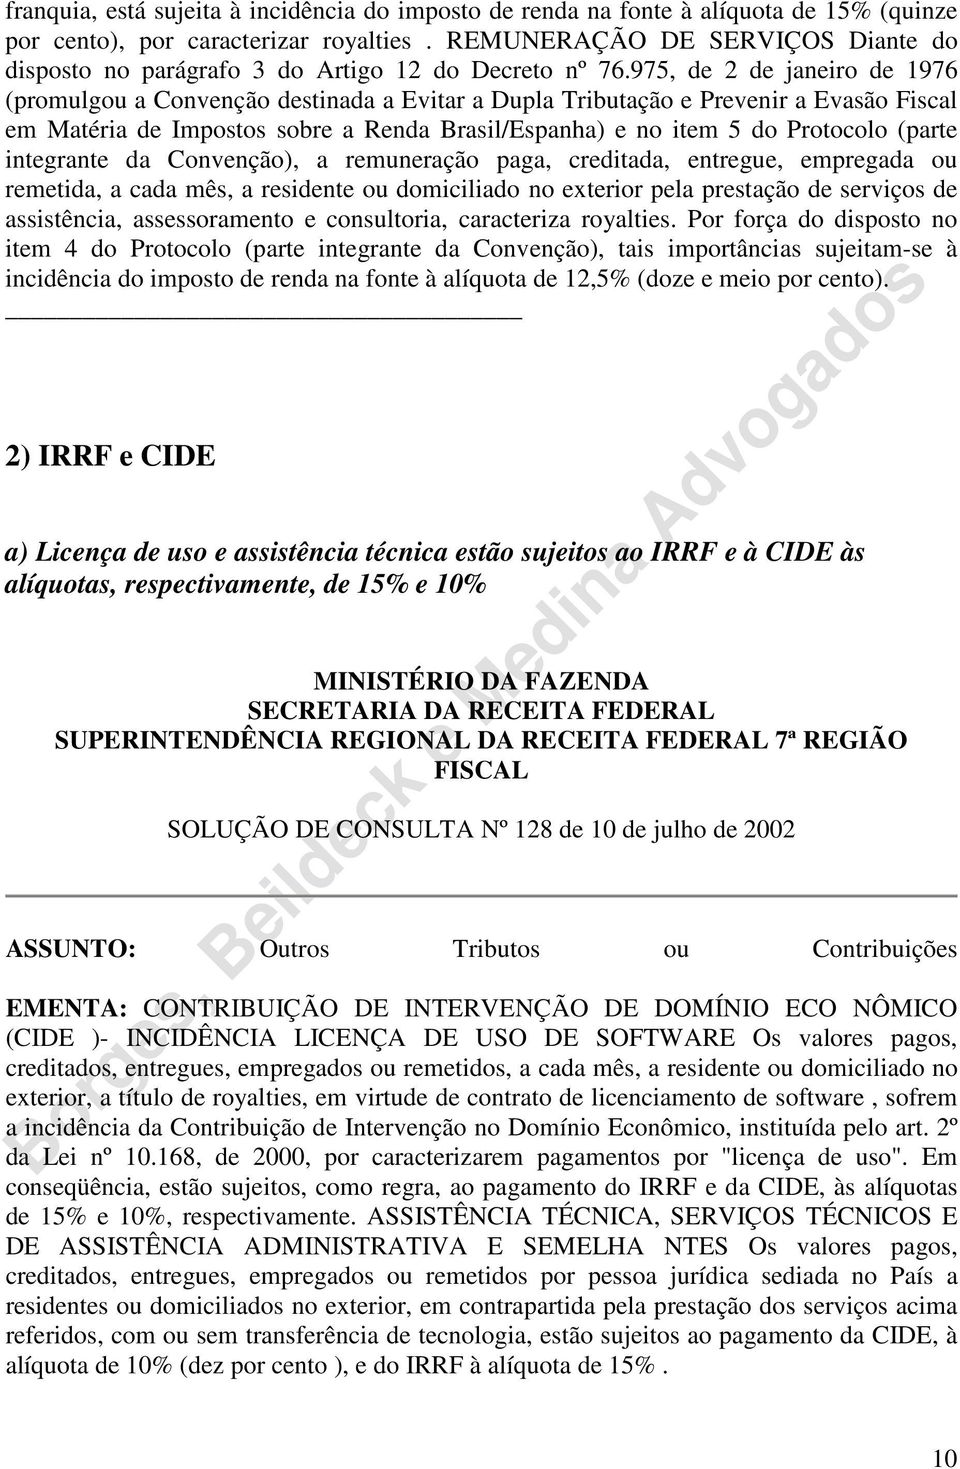 975, de 2 de janeiro de 1976 (promulgou a Convenção destinada a Evitar a Dupla Tributação e Prevenir a Evasão Fiscal em Matéria de Impostos sobre a Renda Brasil/Espanha) e no item 5 do Protocolo